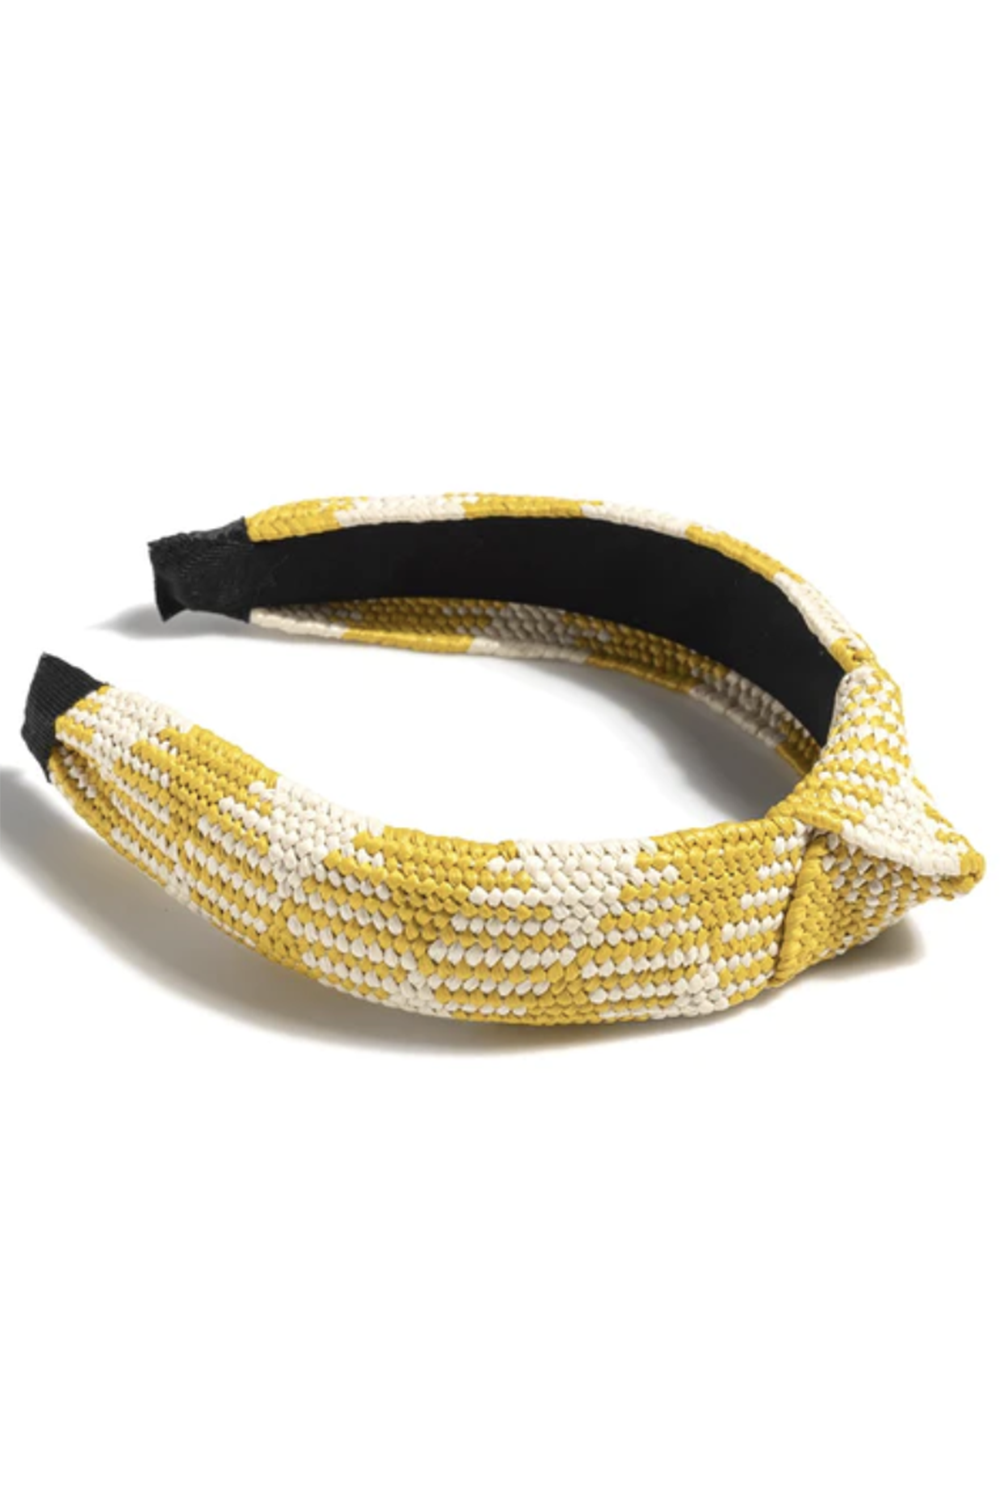 Fashion Women's Headband - Knotted Straw Yellow